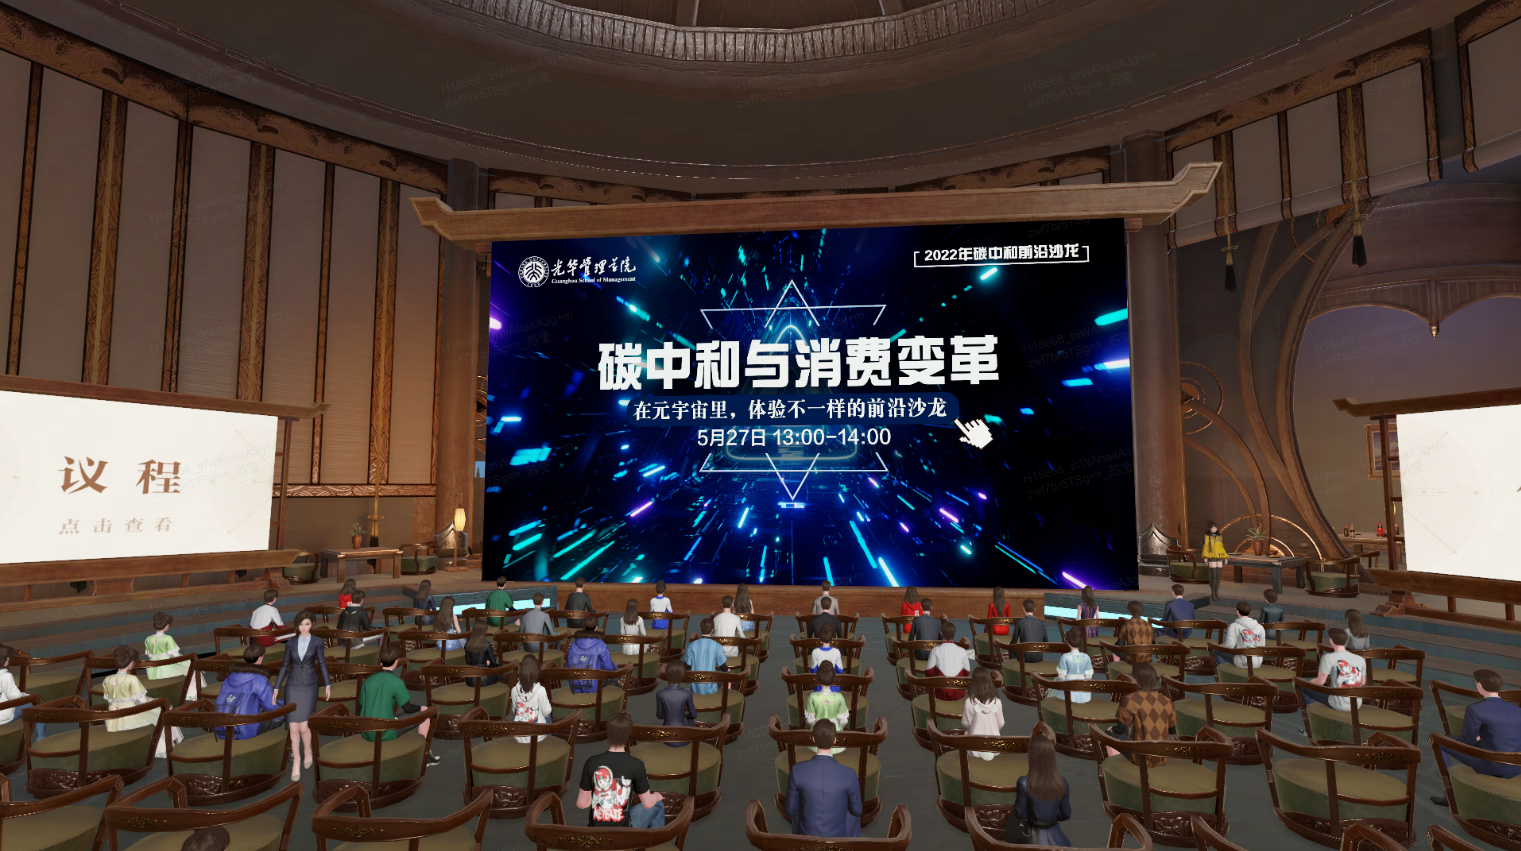 图片展示了一个现代会议室内部，人们坐着，前方有个大屏幕显示着即将举行的活动信息。